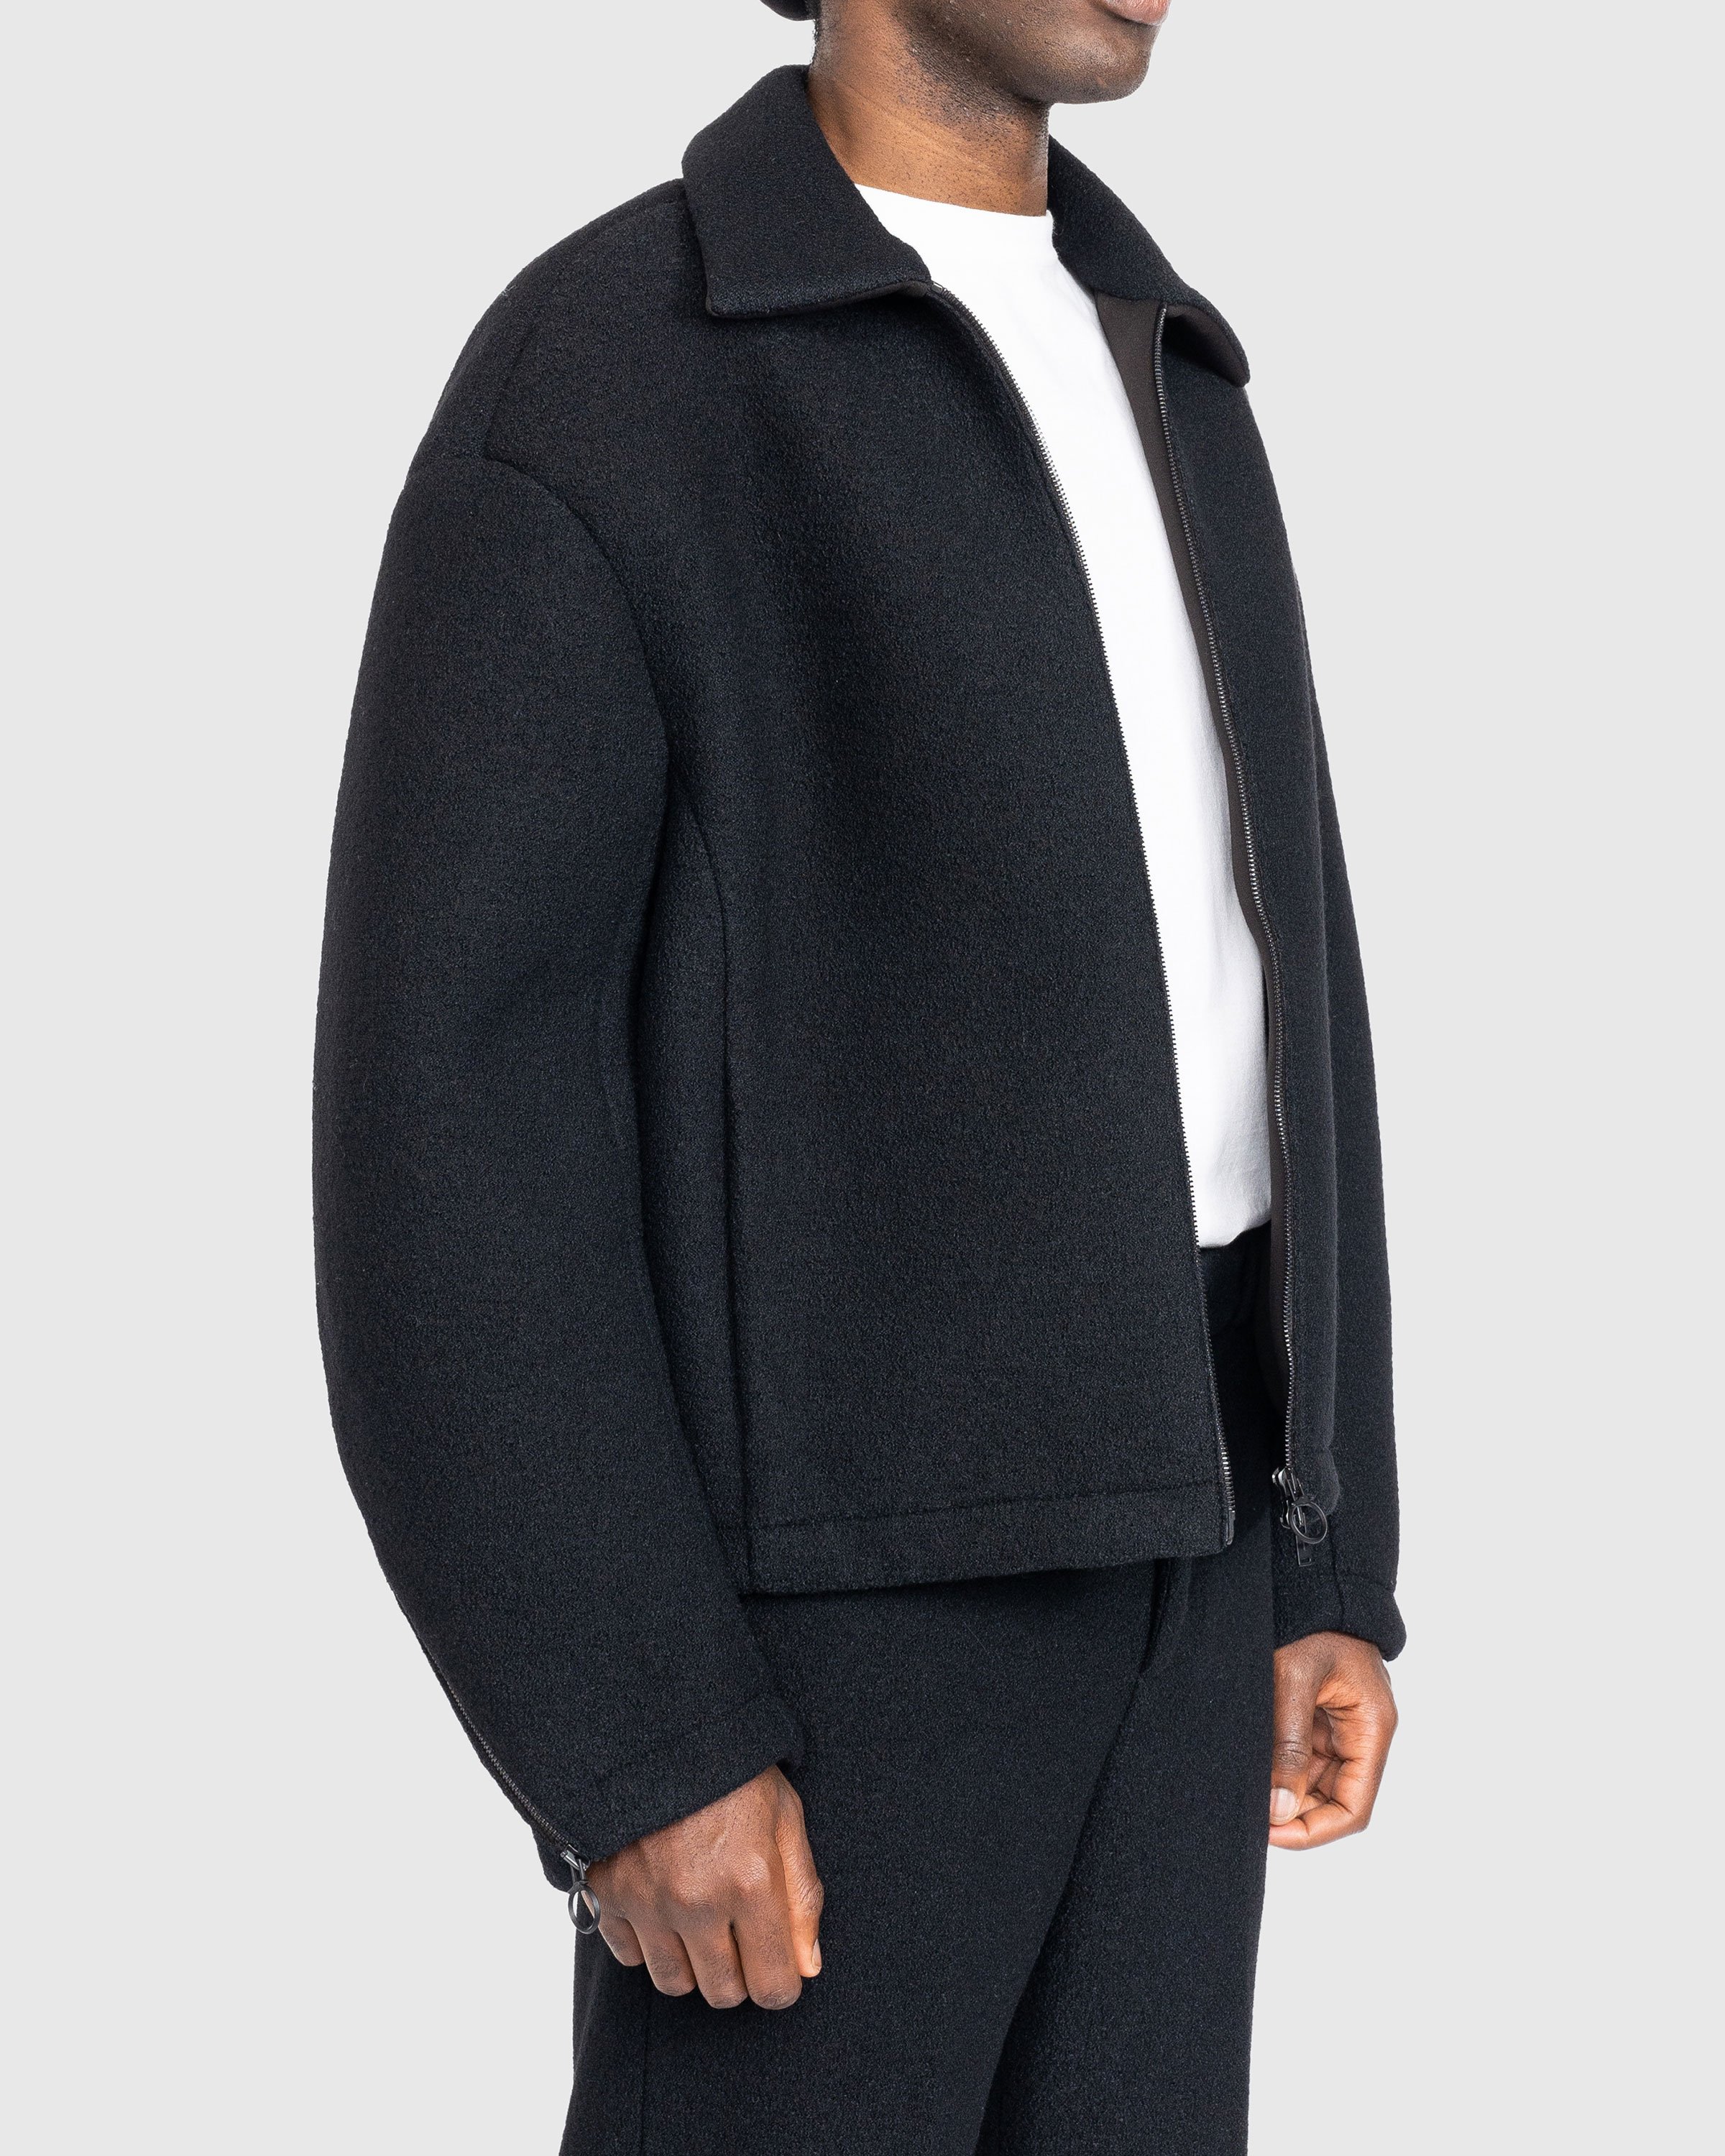 Trussardi - Boucle Jersey Scuba Jacket Black - Clothing - Black - Image 3